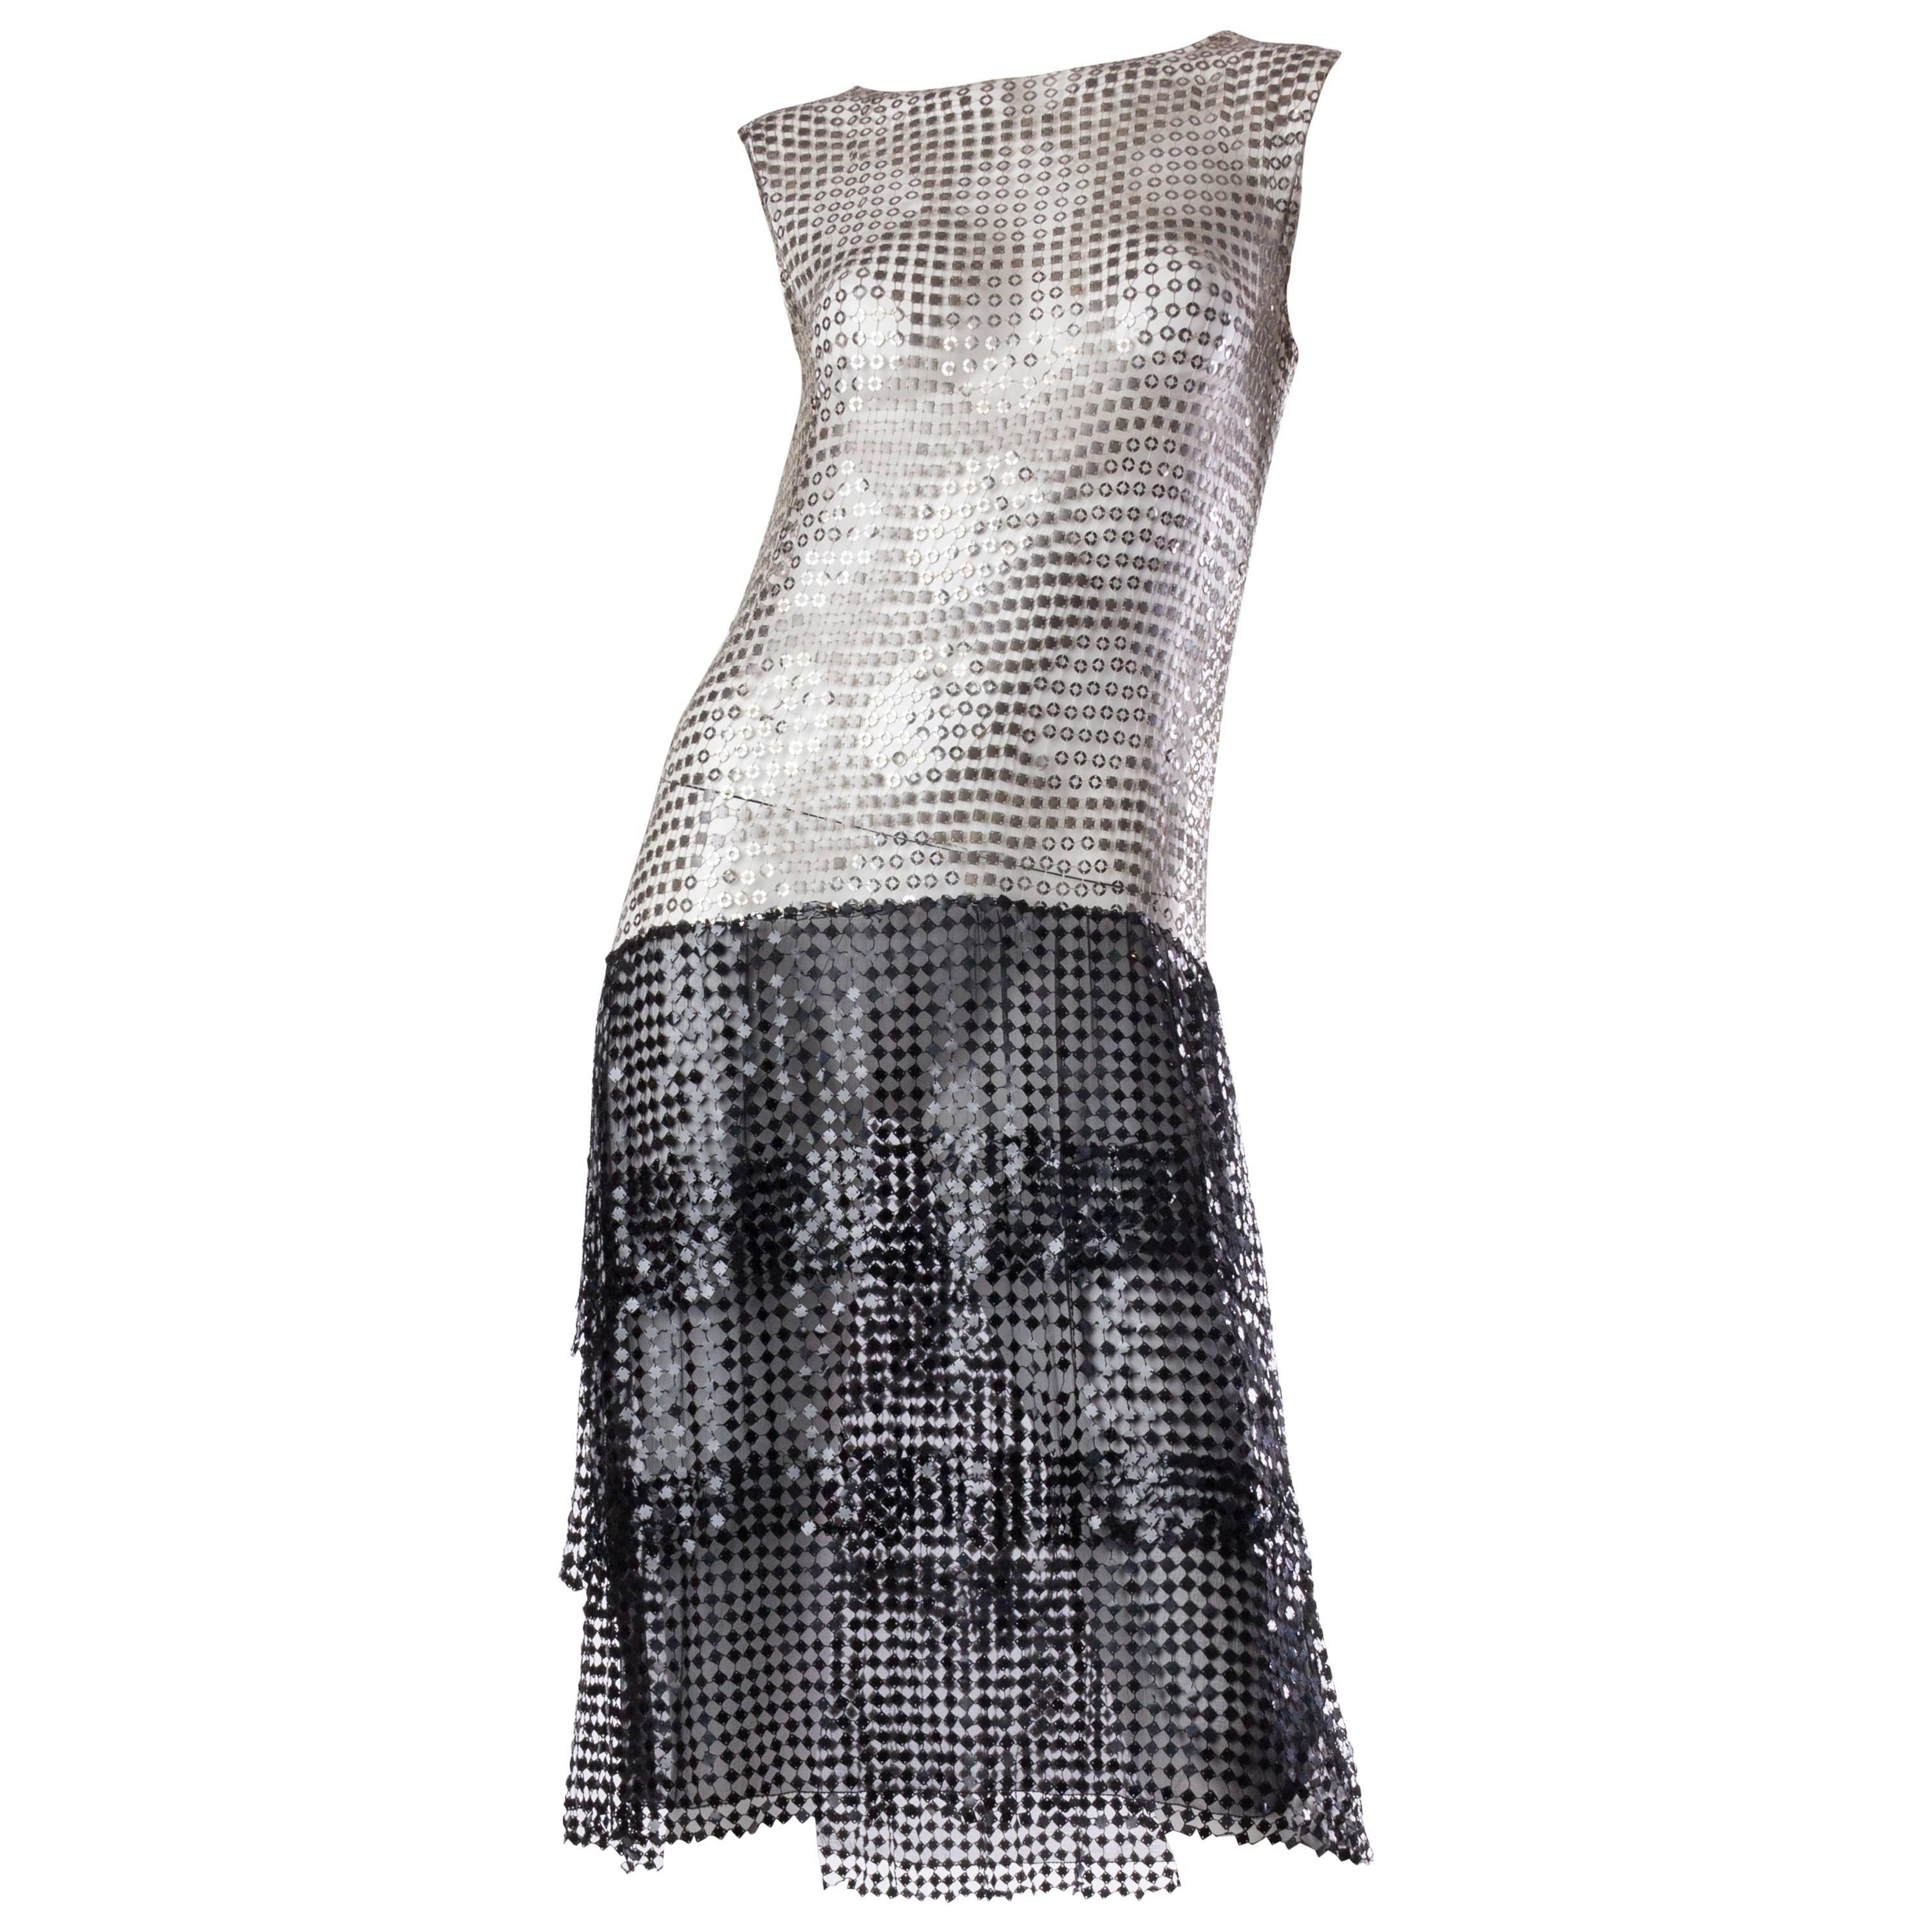 Spectacular 1920s Art Deco Sequin Net Dress